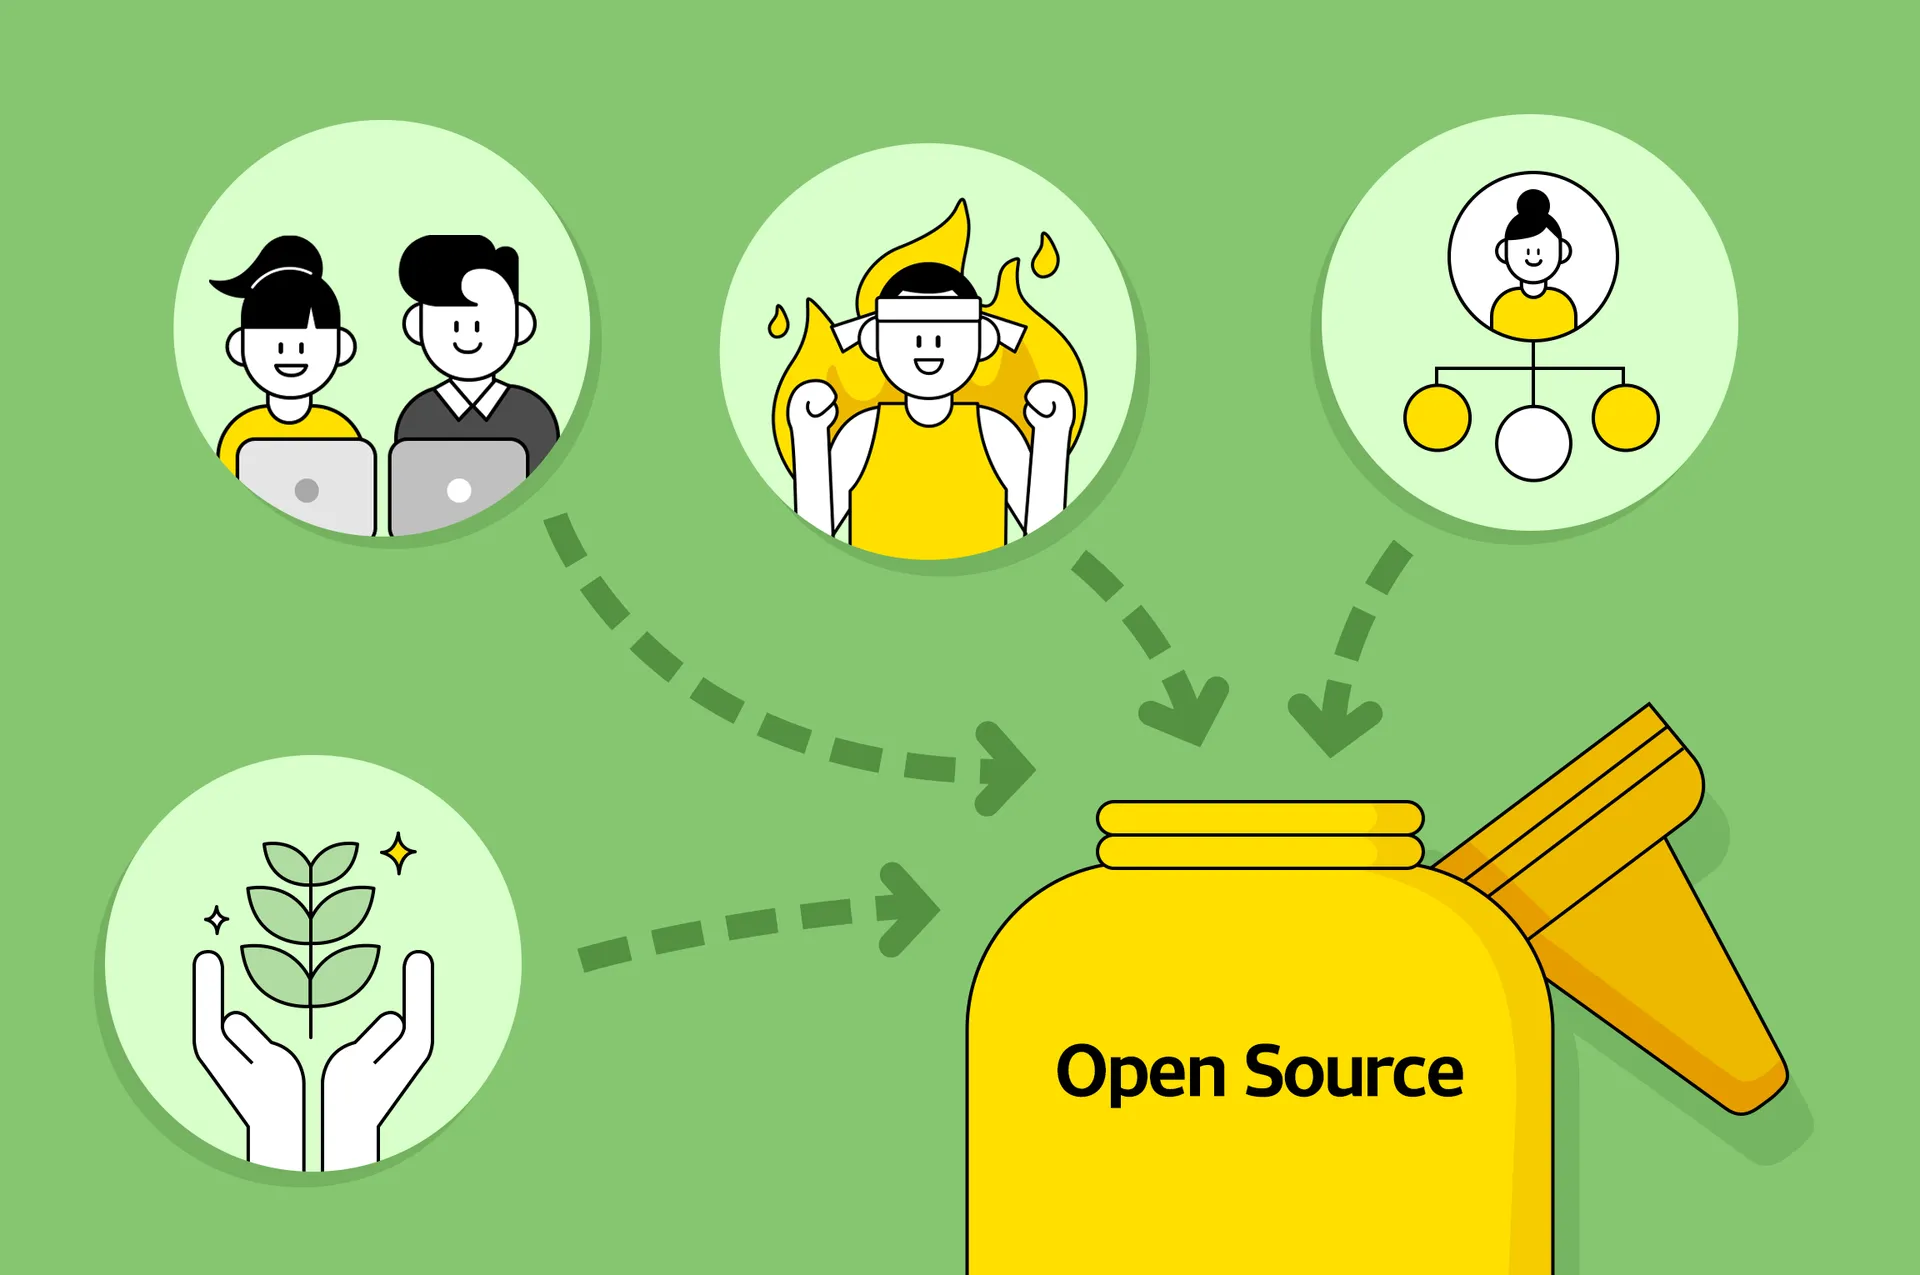 주니어 개발자의 오픈소스 활동 이야기